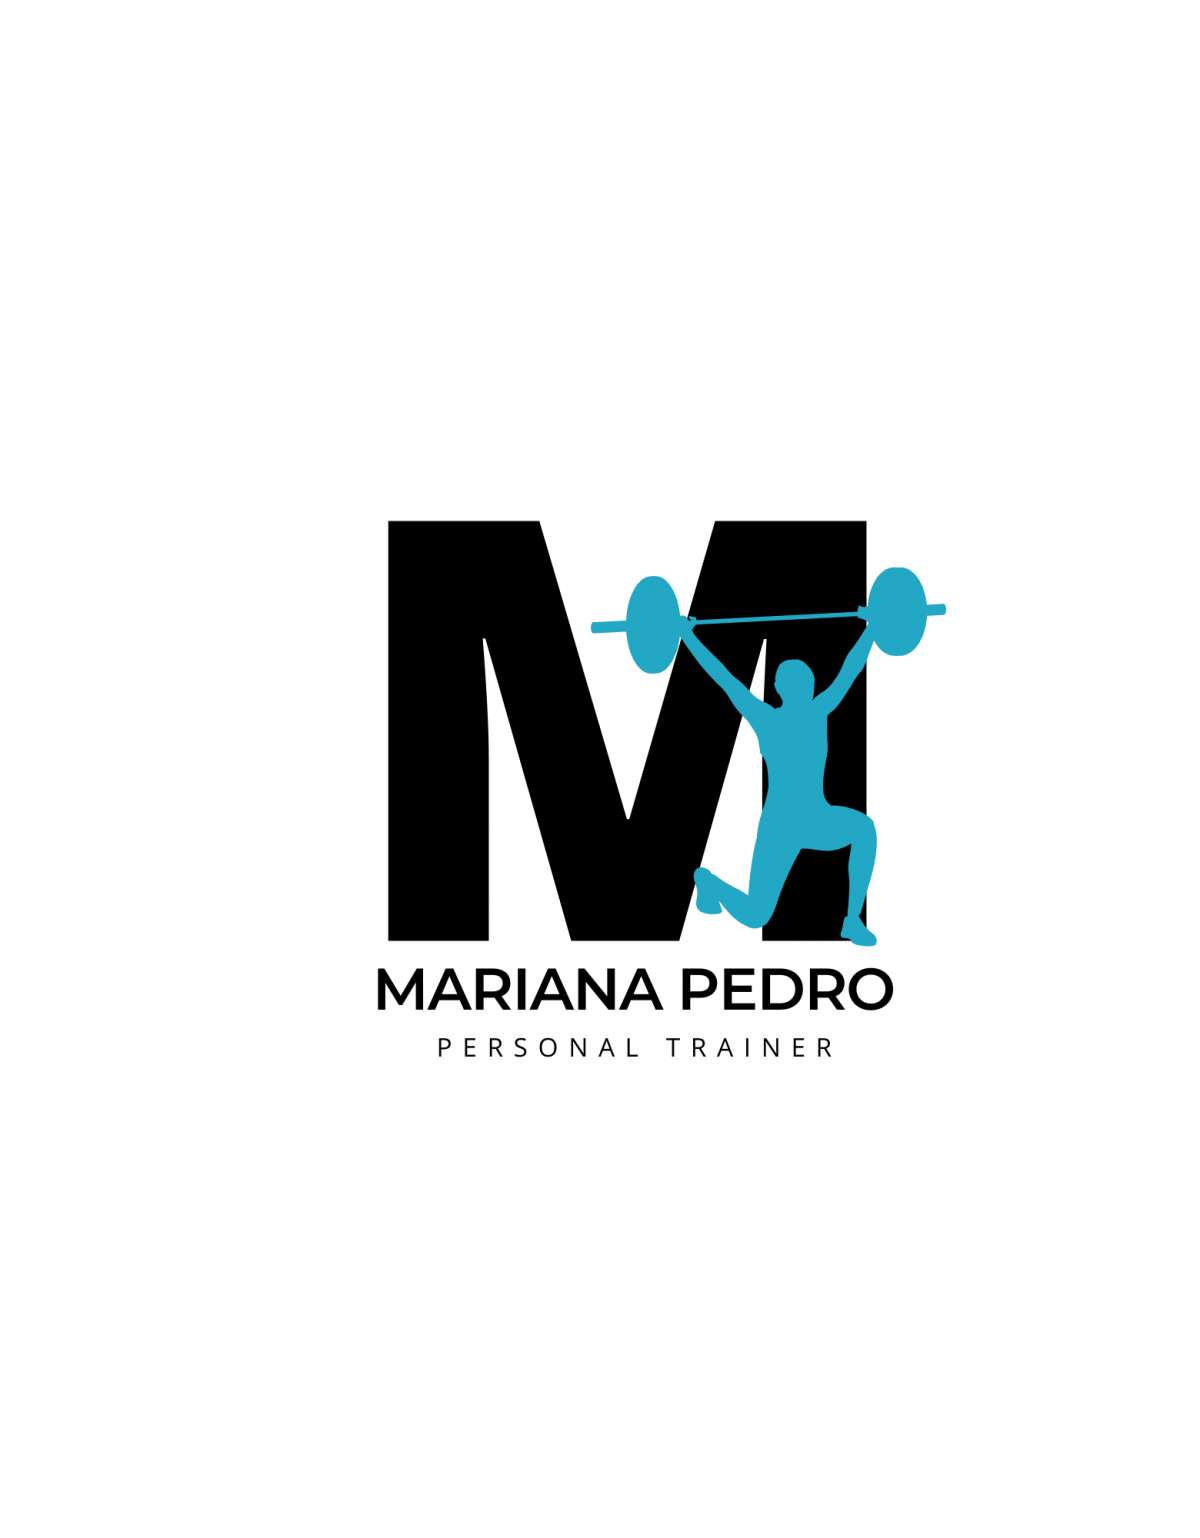 Mariana Pedro - Leiria - Treino Intervalado de Alta Intensidade (HIIT)